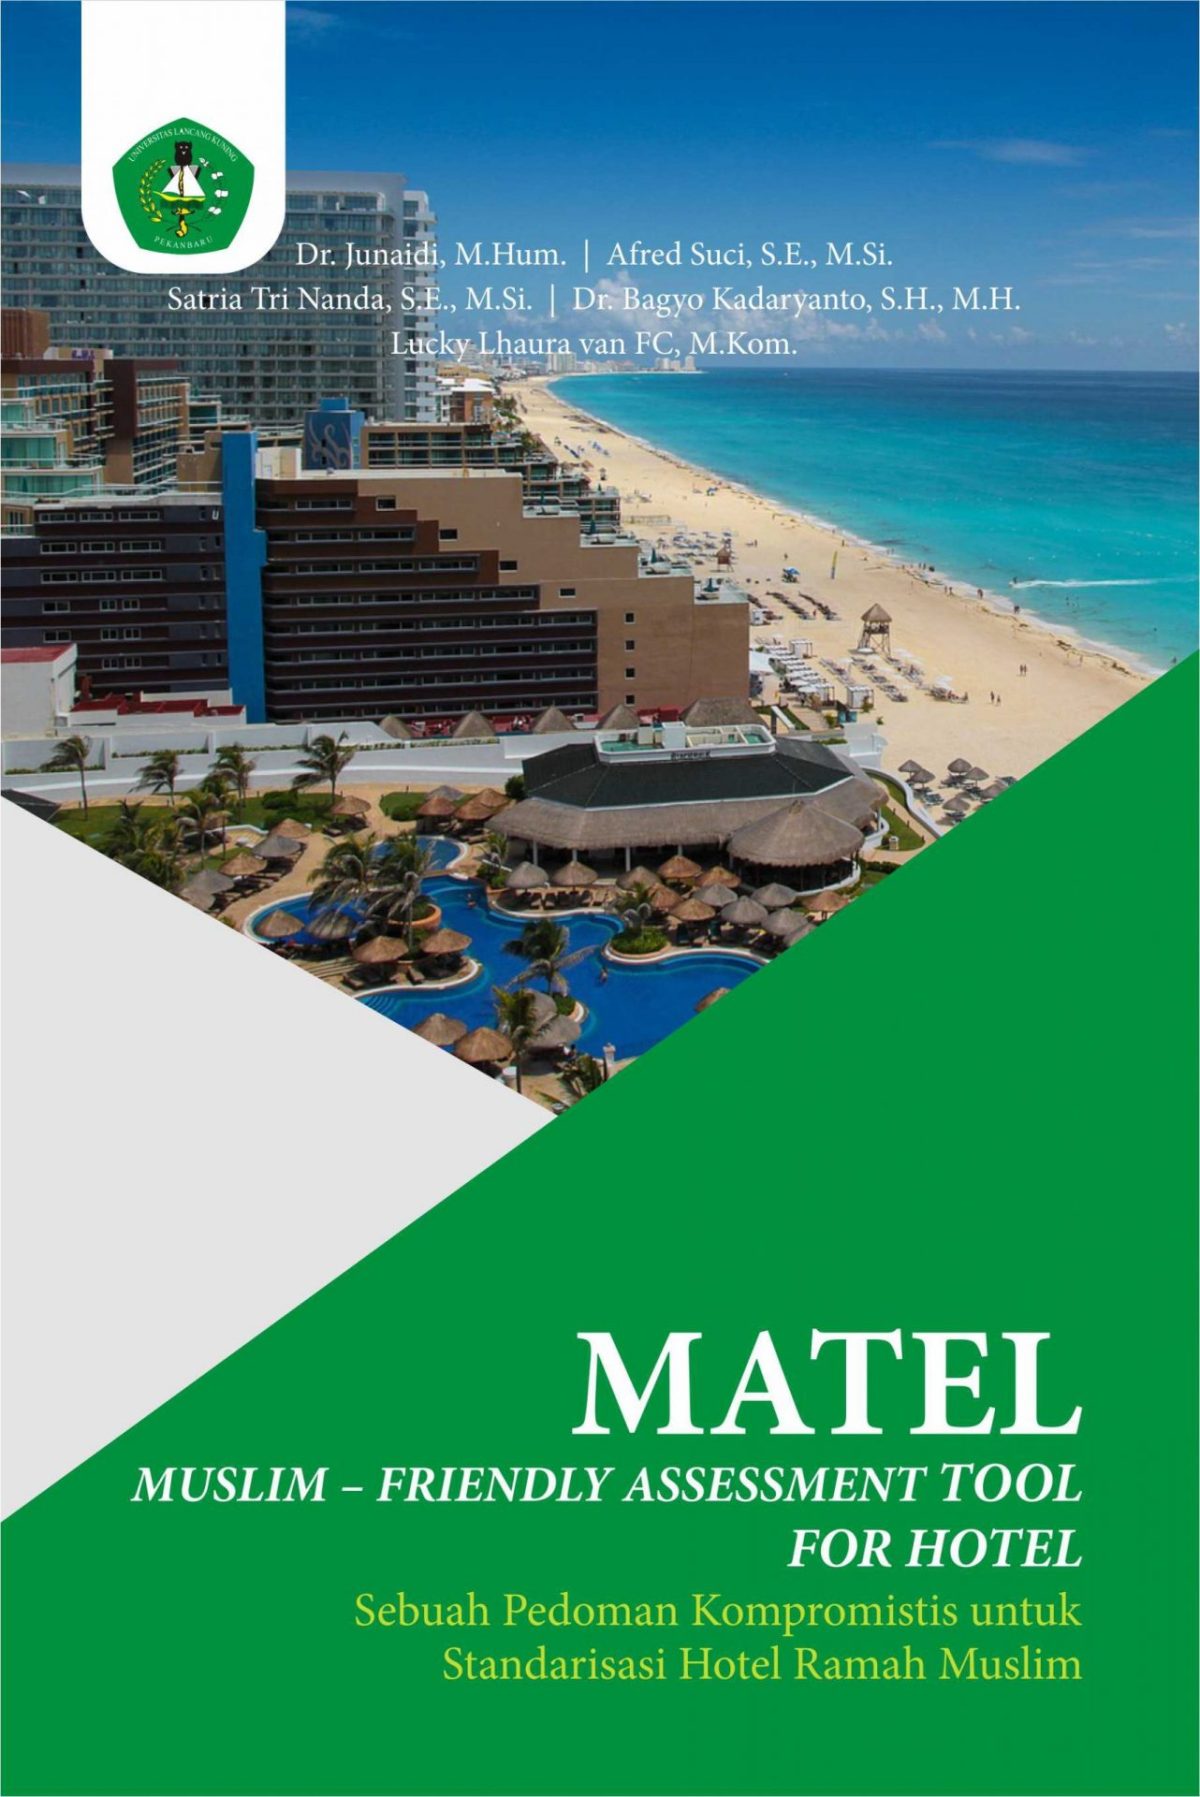 MATEL MUSLIM – FRIENDLY ASSESSMENT TOOL FOR HOTEL Sebuah Pedoman Kompromistis untuk Standarisasi Hotel Ramah Muslim